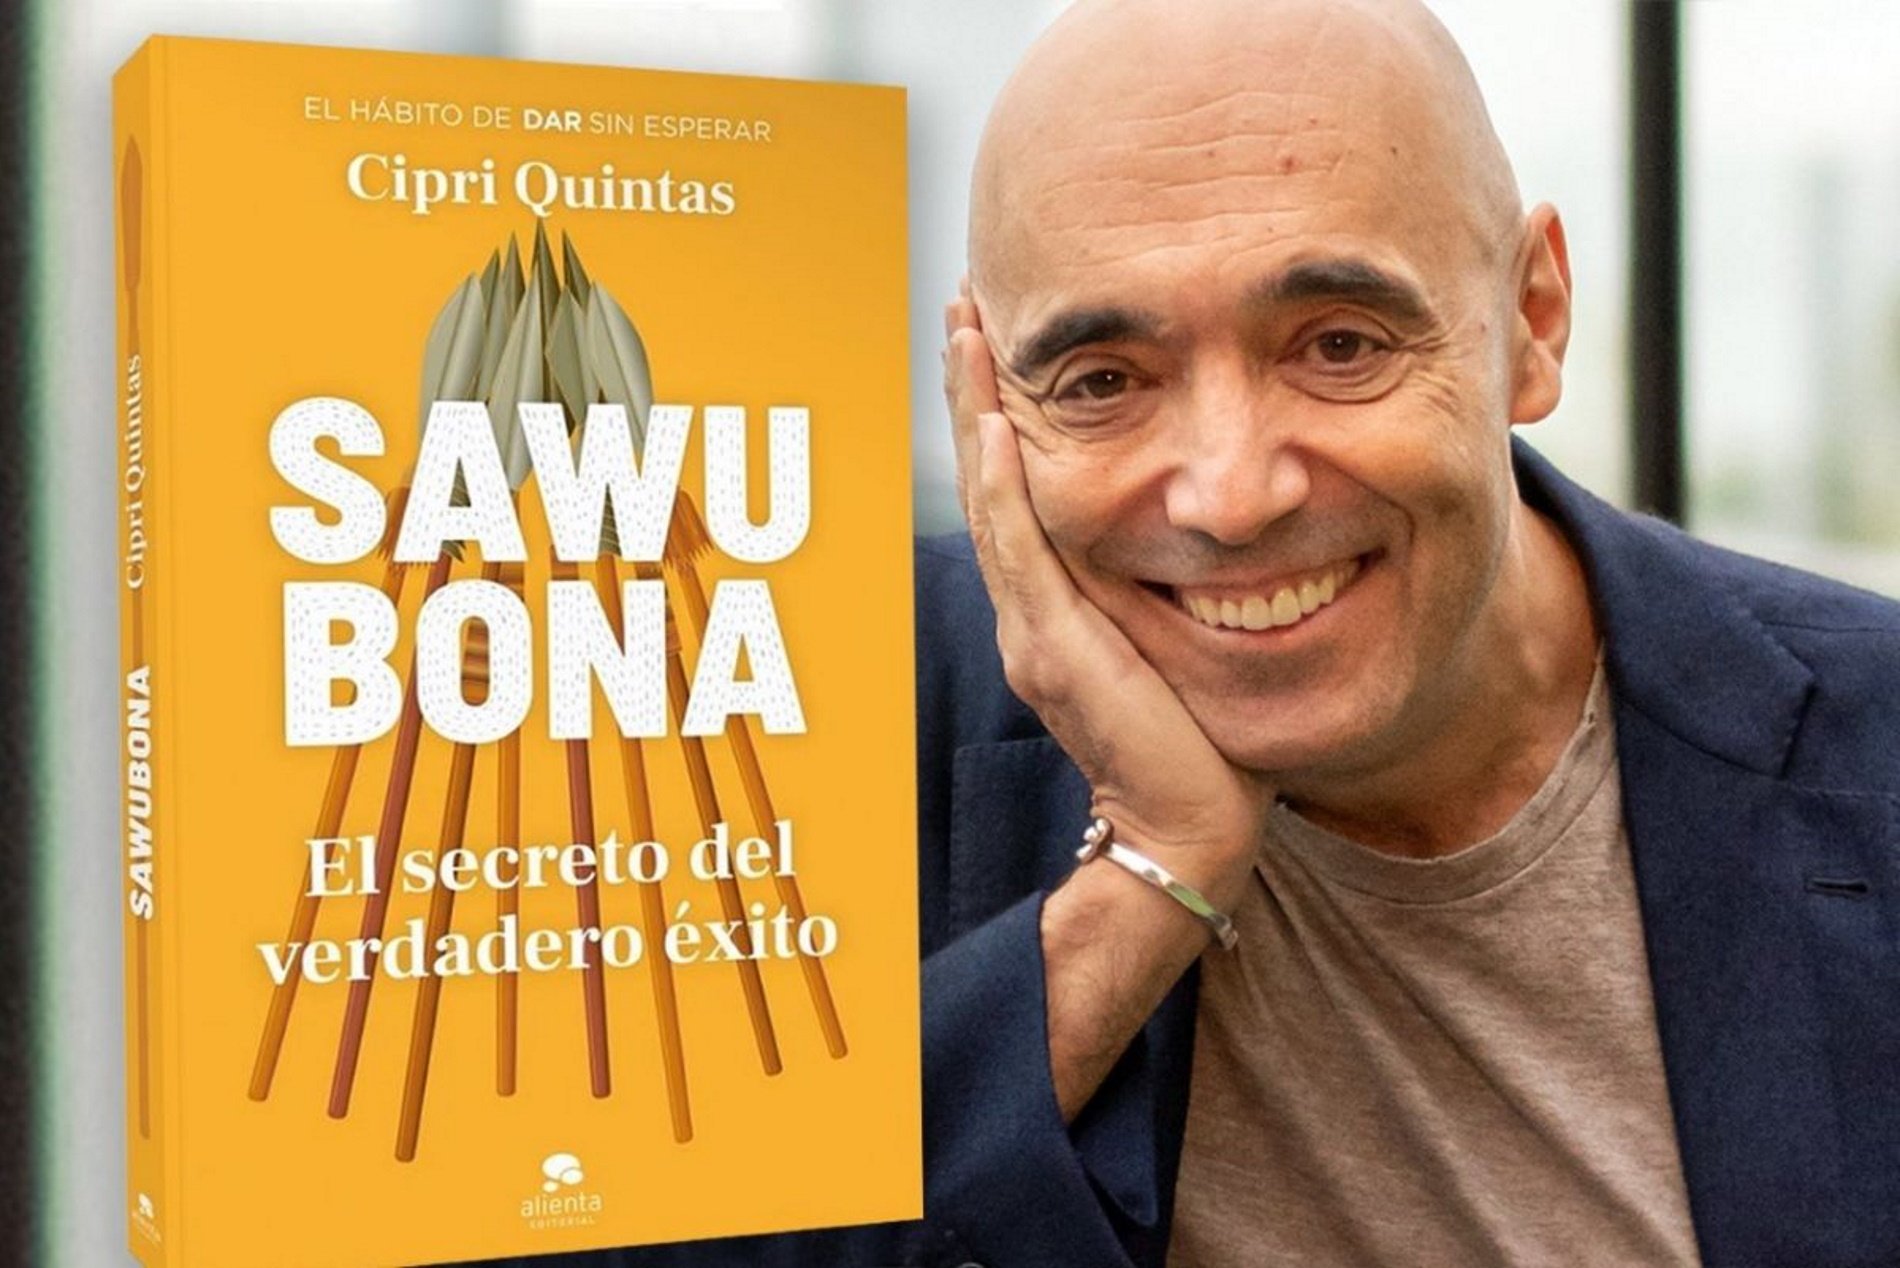 Cipri Quintas descubre "El secreto del verdadero éxito" en su nuevo libro